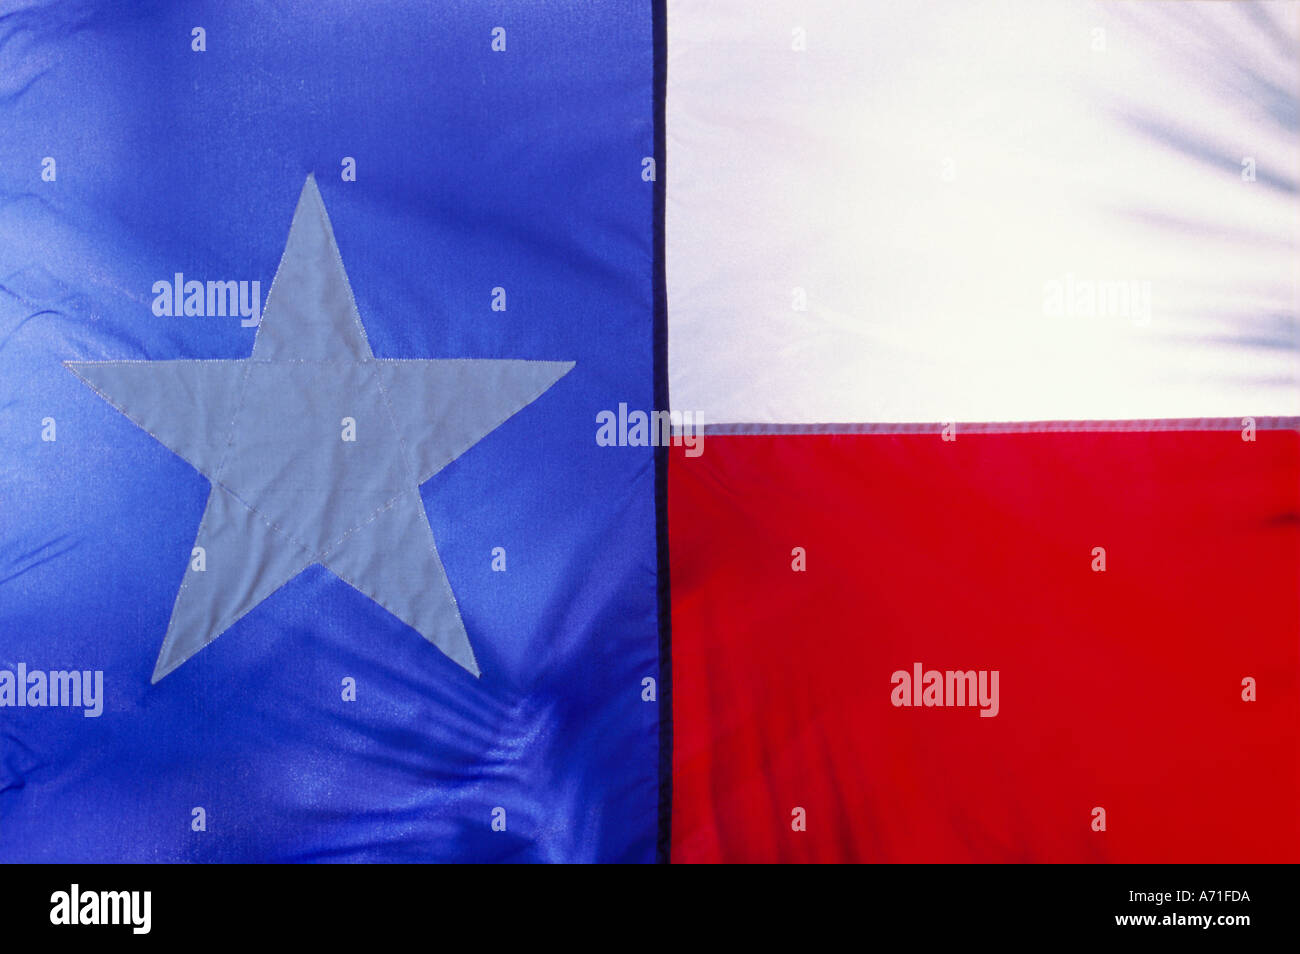 Nahaufnahme Von Der Texas State Flag Anzeige Rot Weiss Und Blau Und Ein Lrage Weisser Stern Stockfotografie Alamy